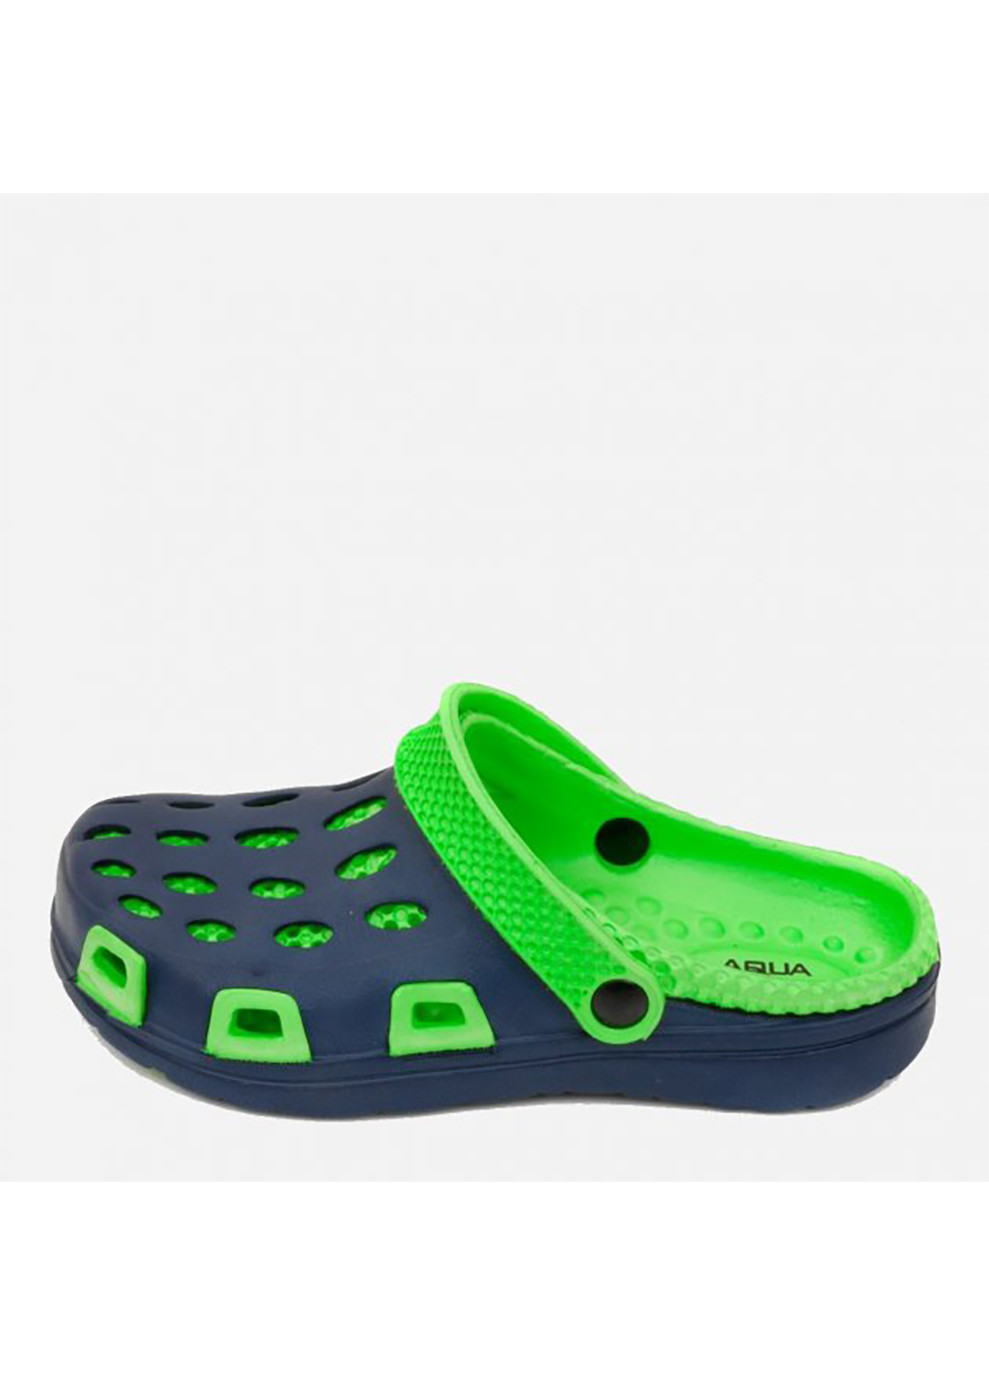 Зеленые спортивные кроксы silvi 6927 синий, зеленый Aqua Speed